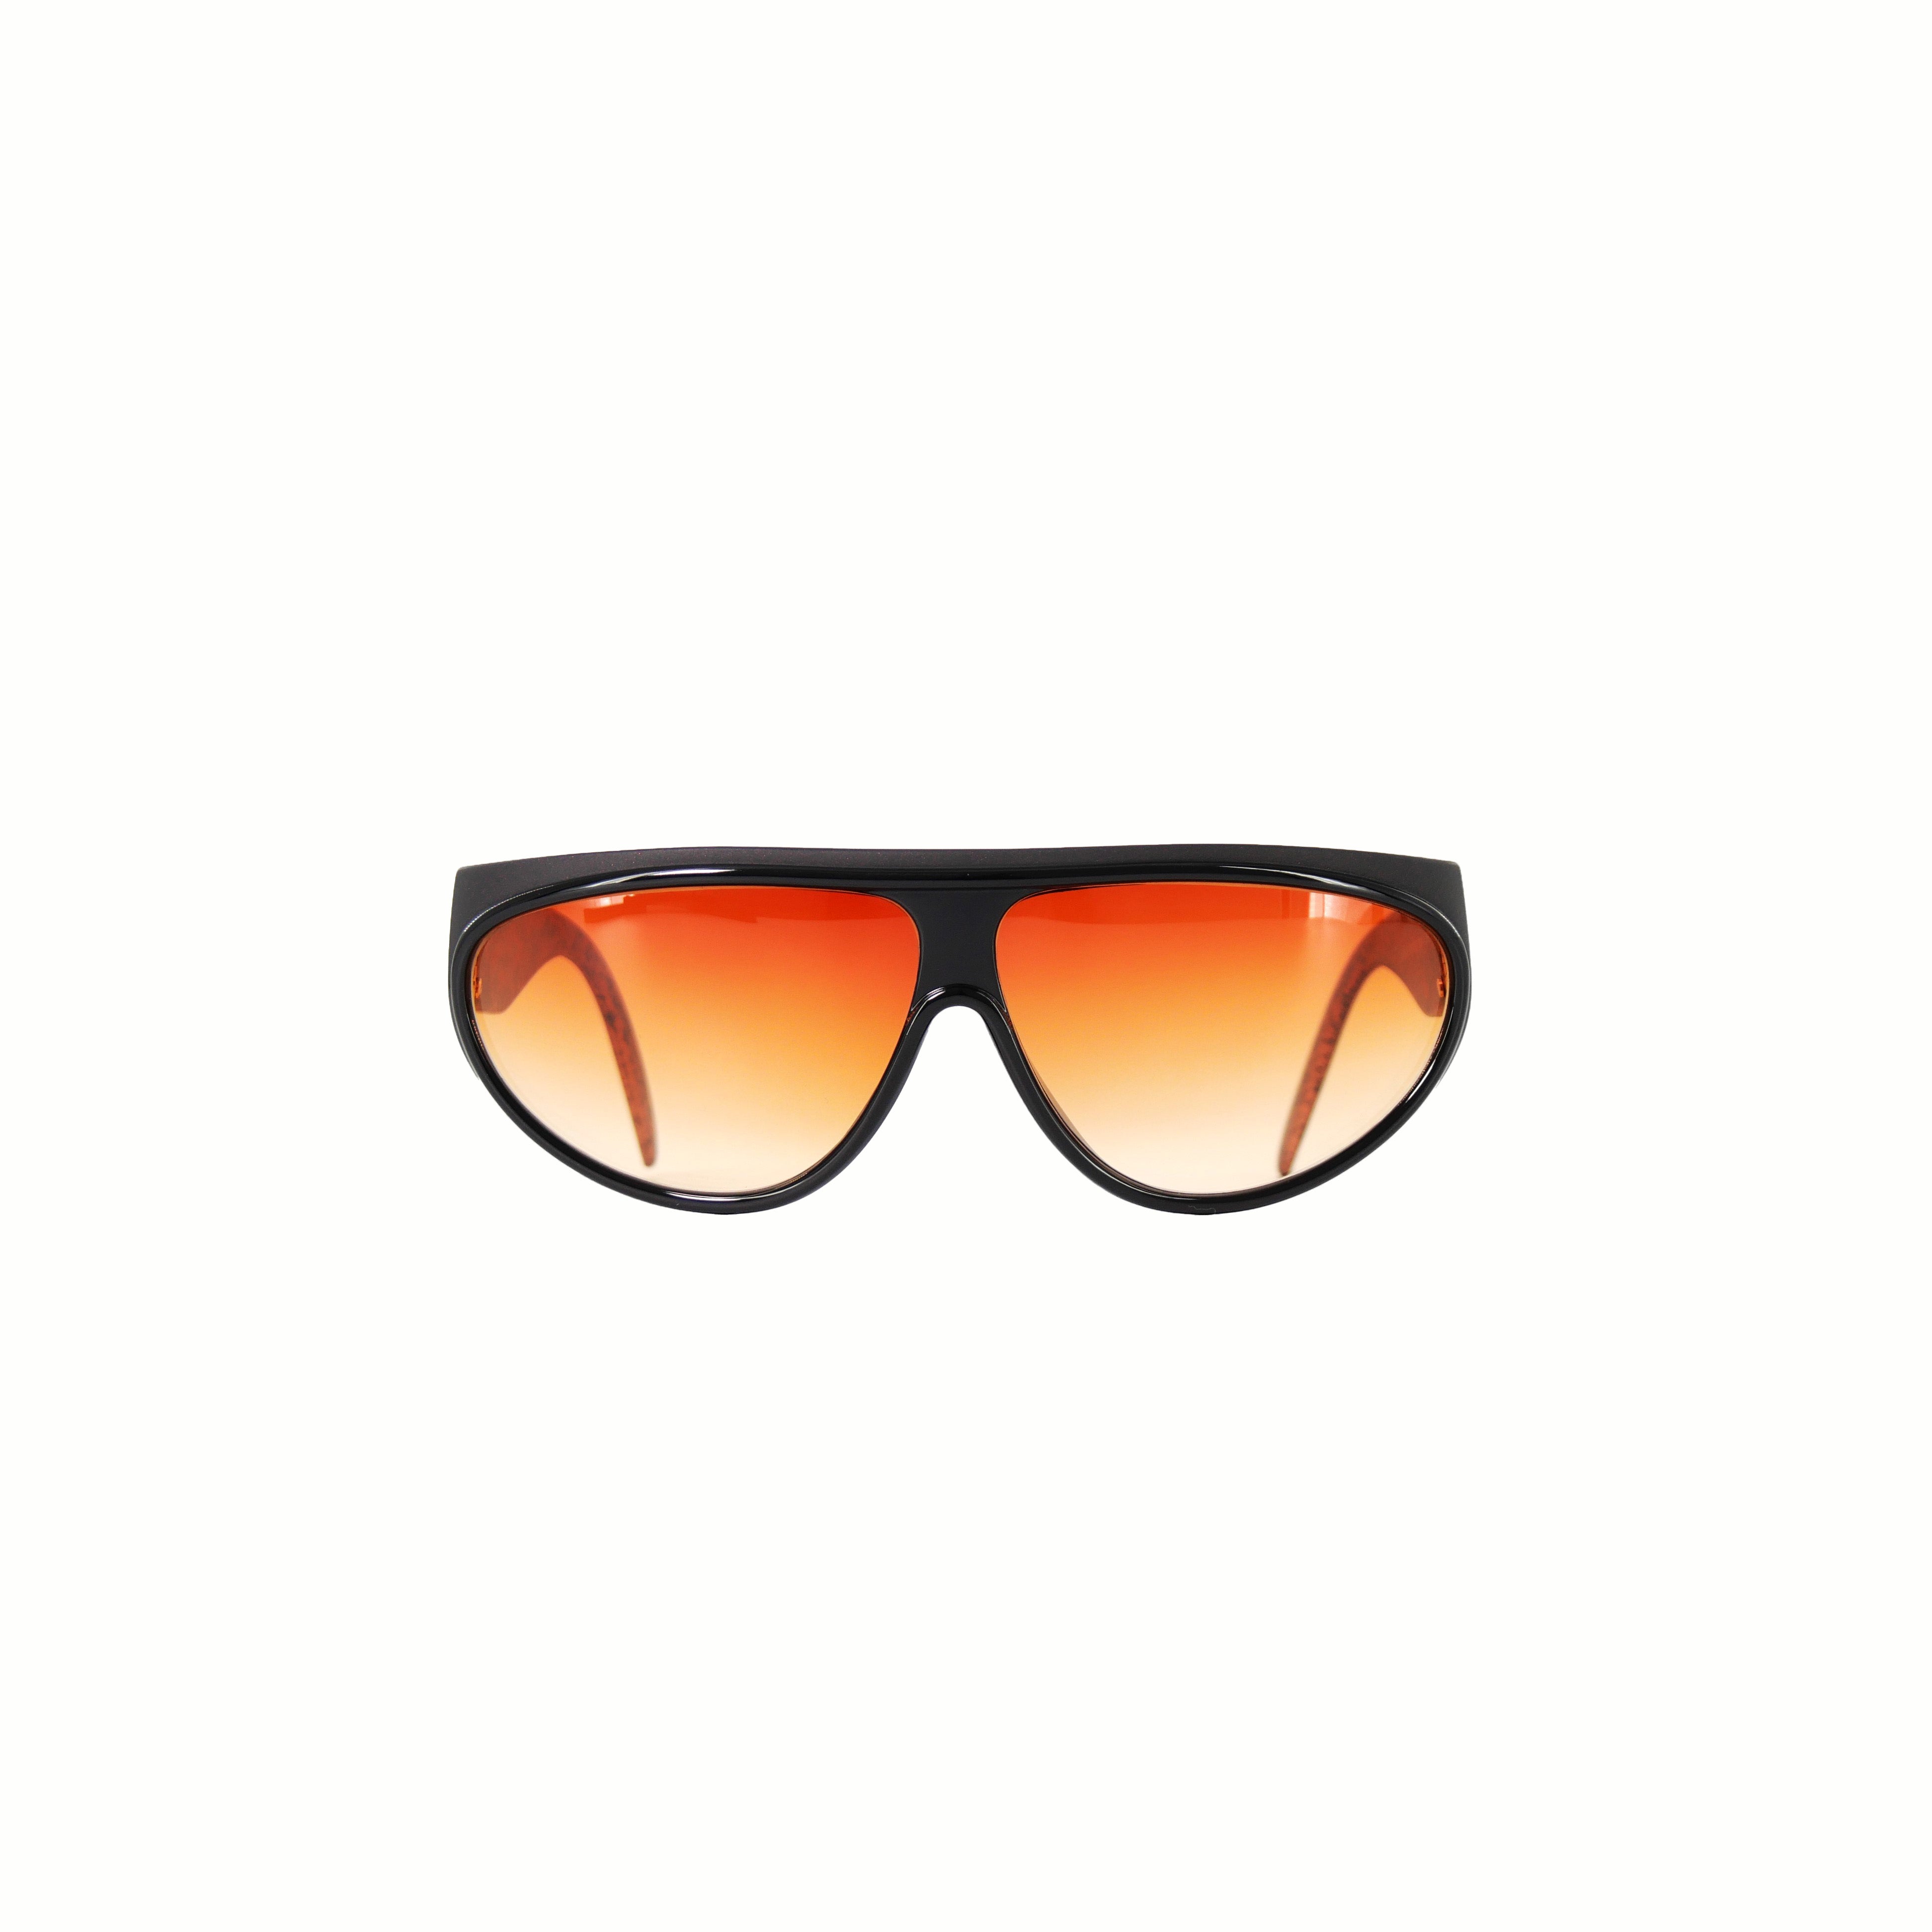 Retro Sun[レトロ サン] / Yve Saint Laurent Sunglasses① [イブ サン ローラン サングラス]